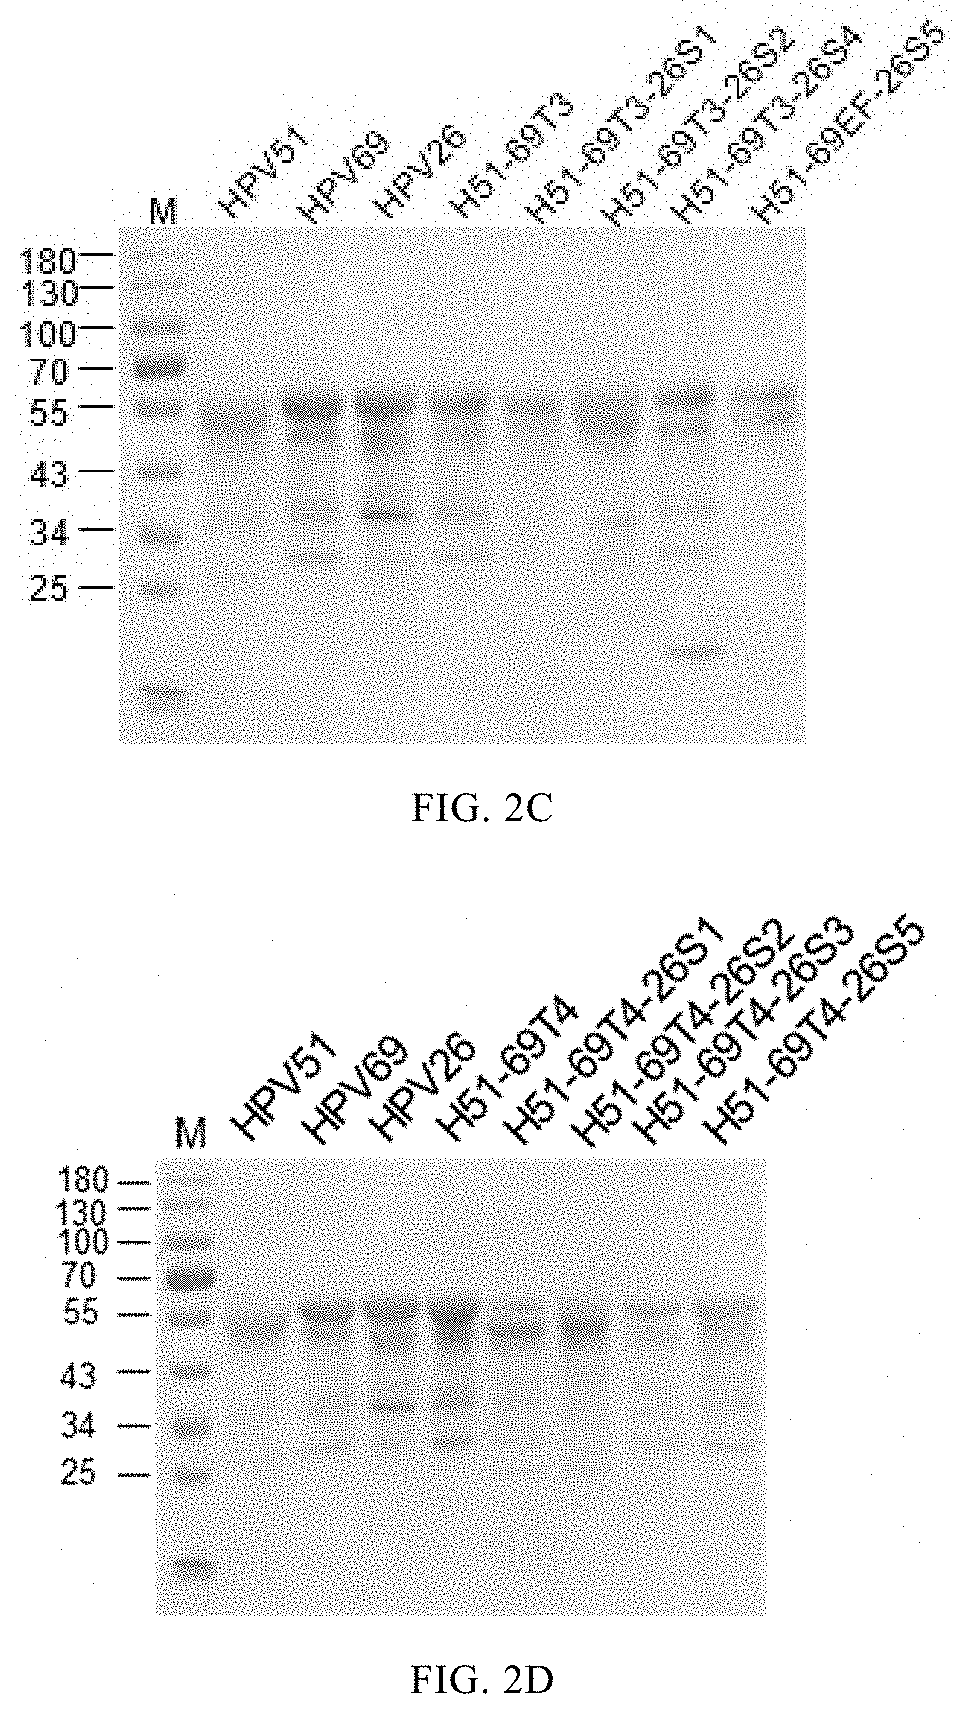 Mutant of l1 protein of human papillomavirus type 51